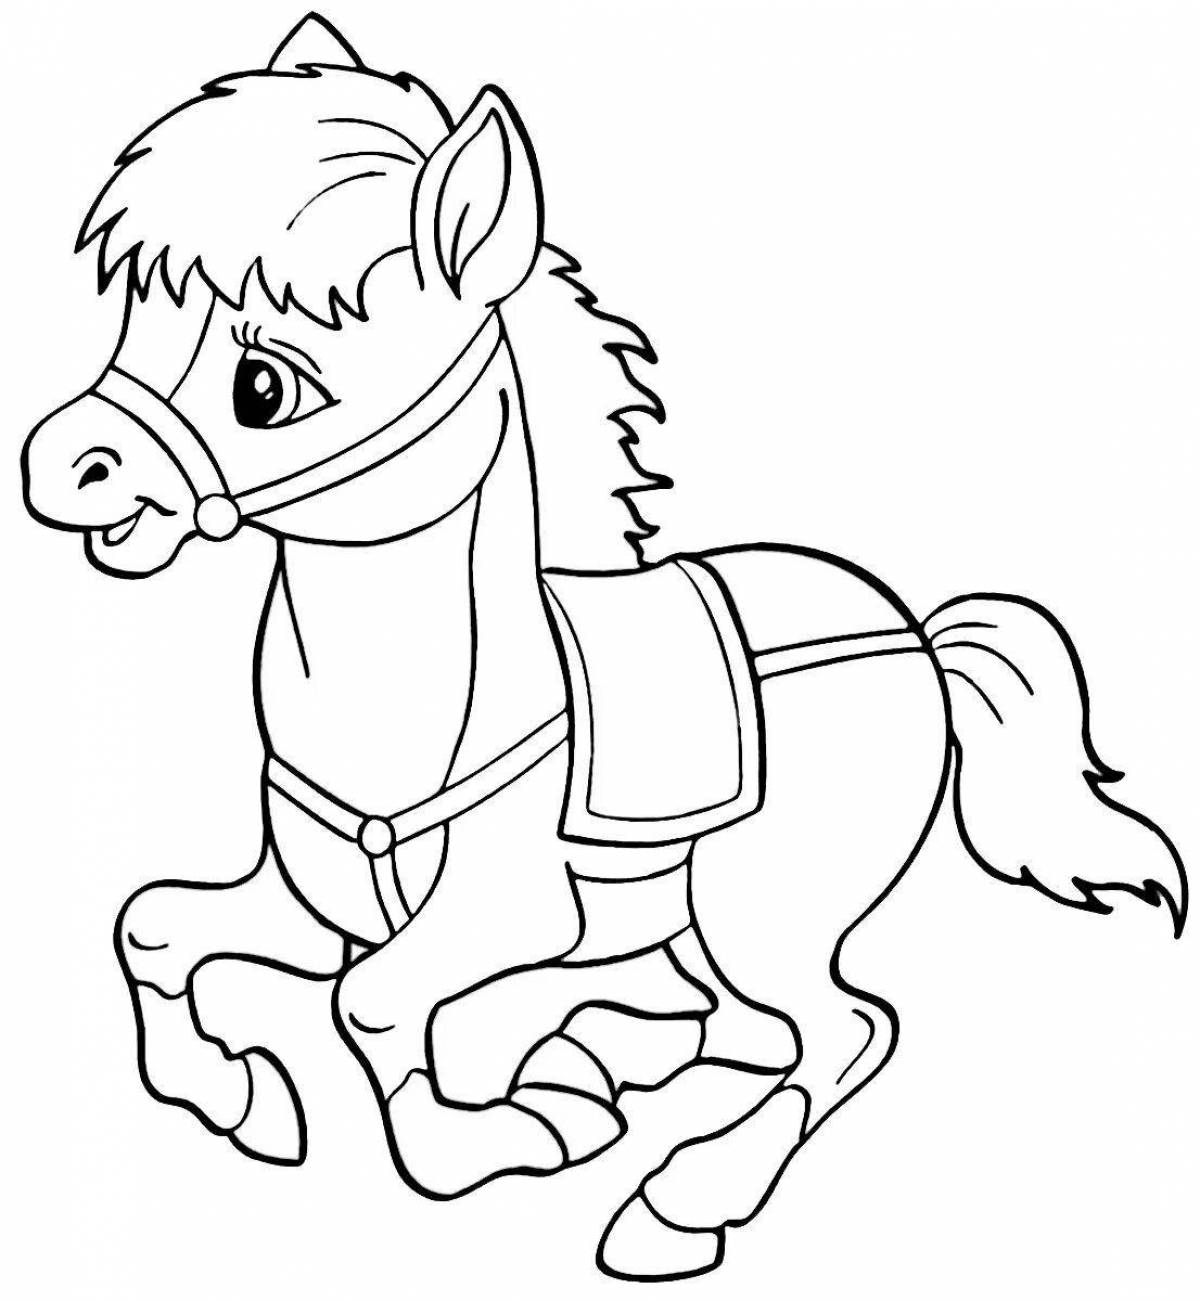 Красочная раскраска лошадь для детей 6-7 лет